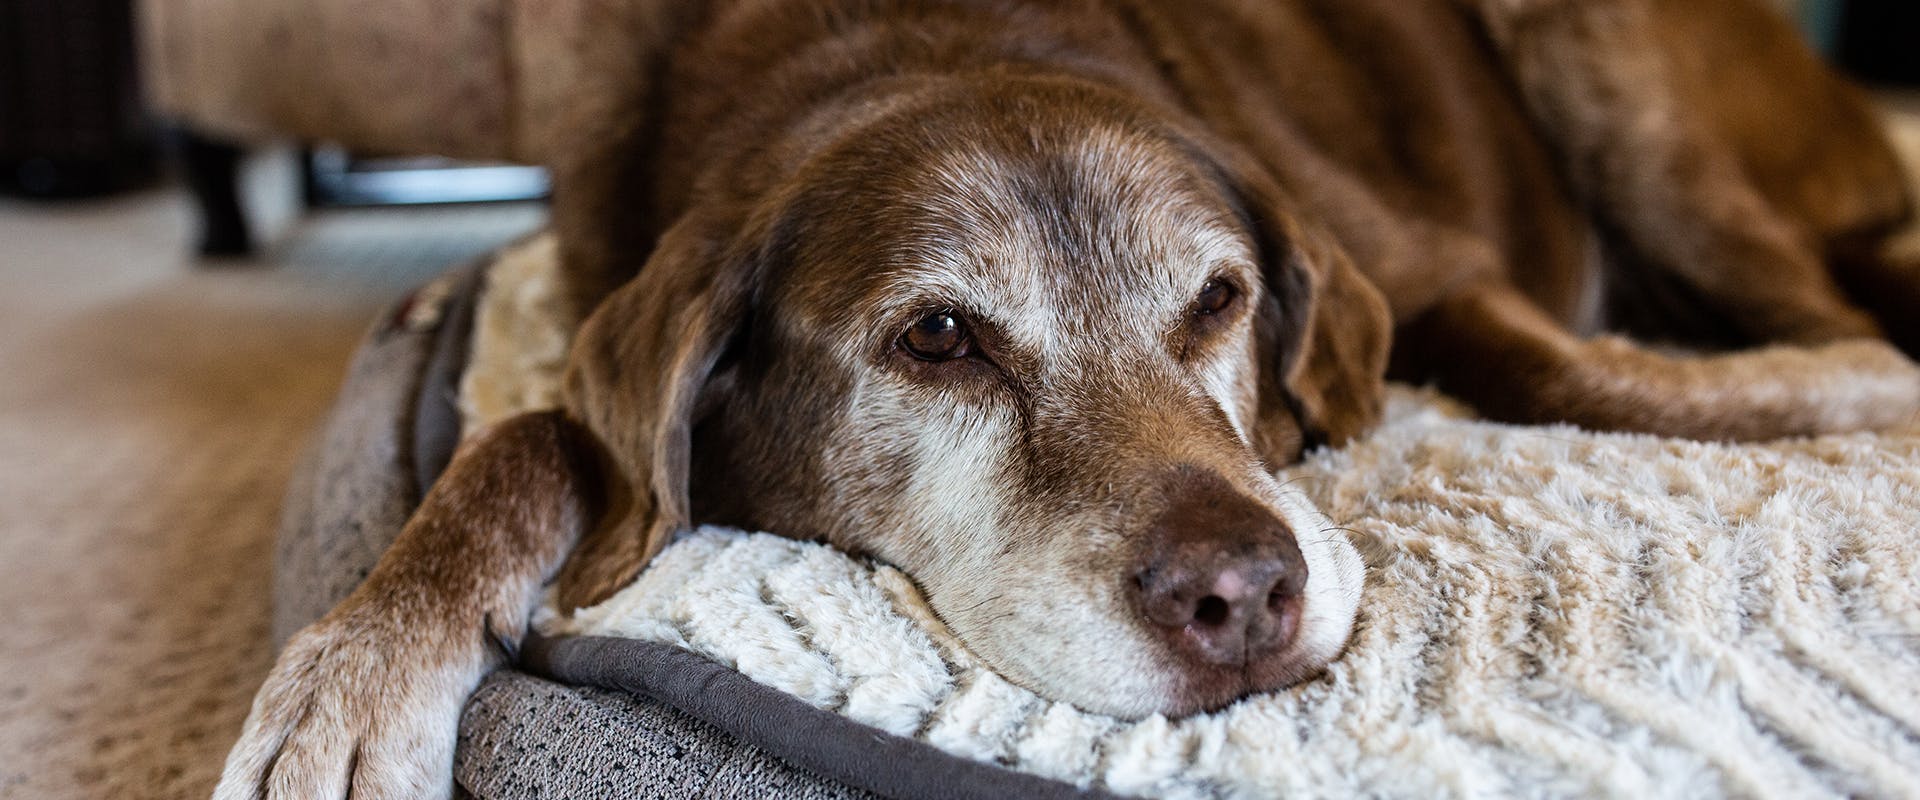 A senior dog sleeping on a large orthopedic dog bed